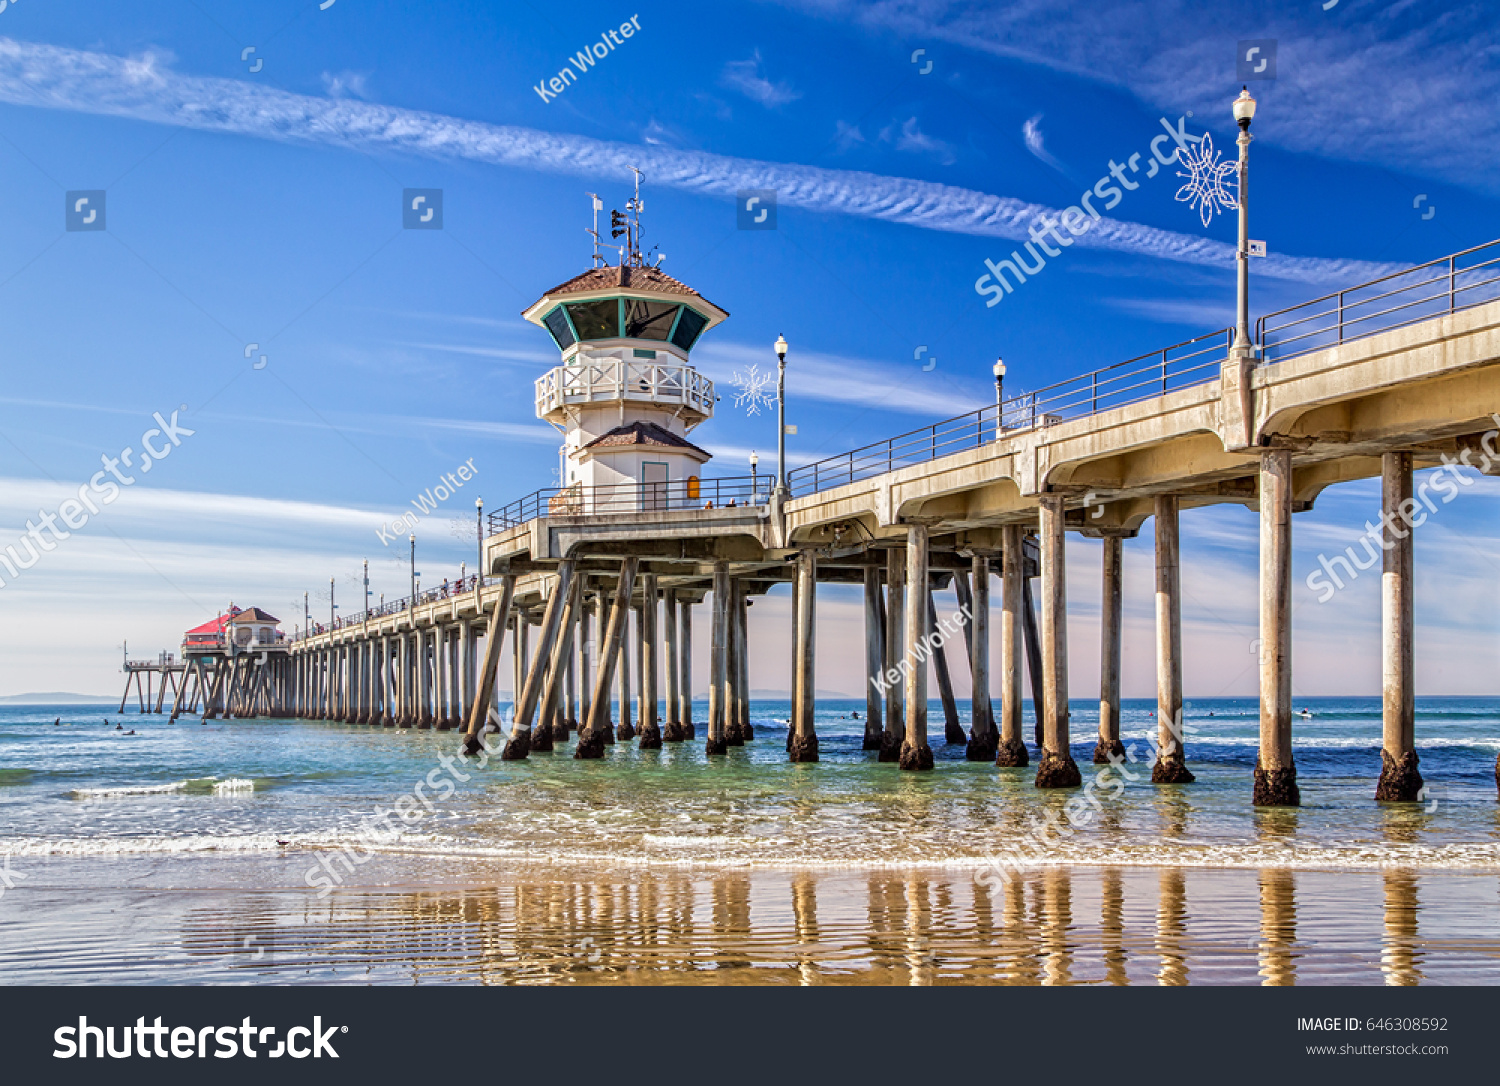 The Huntington Beach Pier in Huntington Beach, California. #646308592